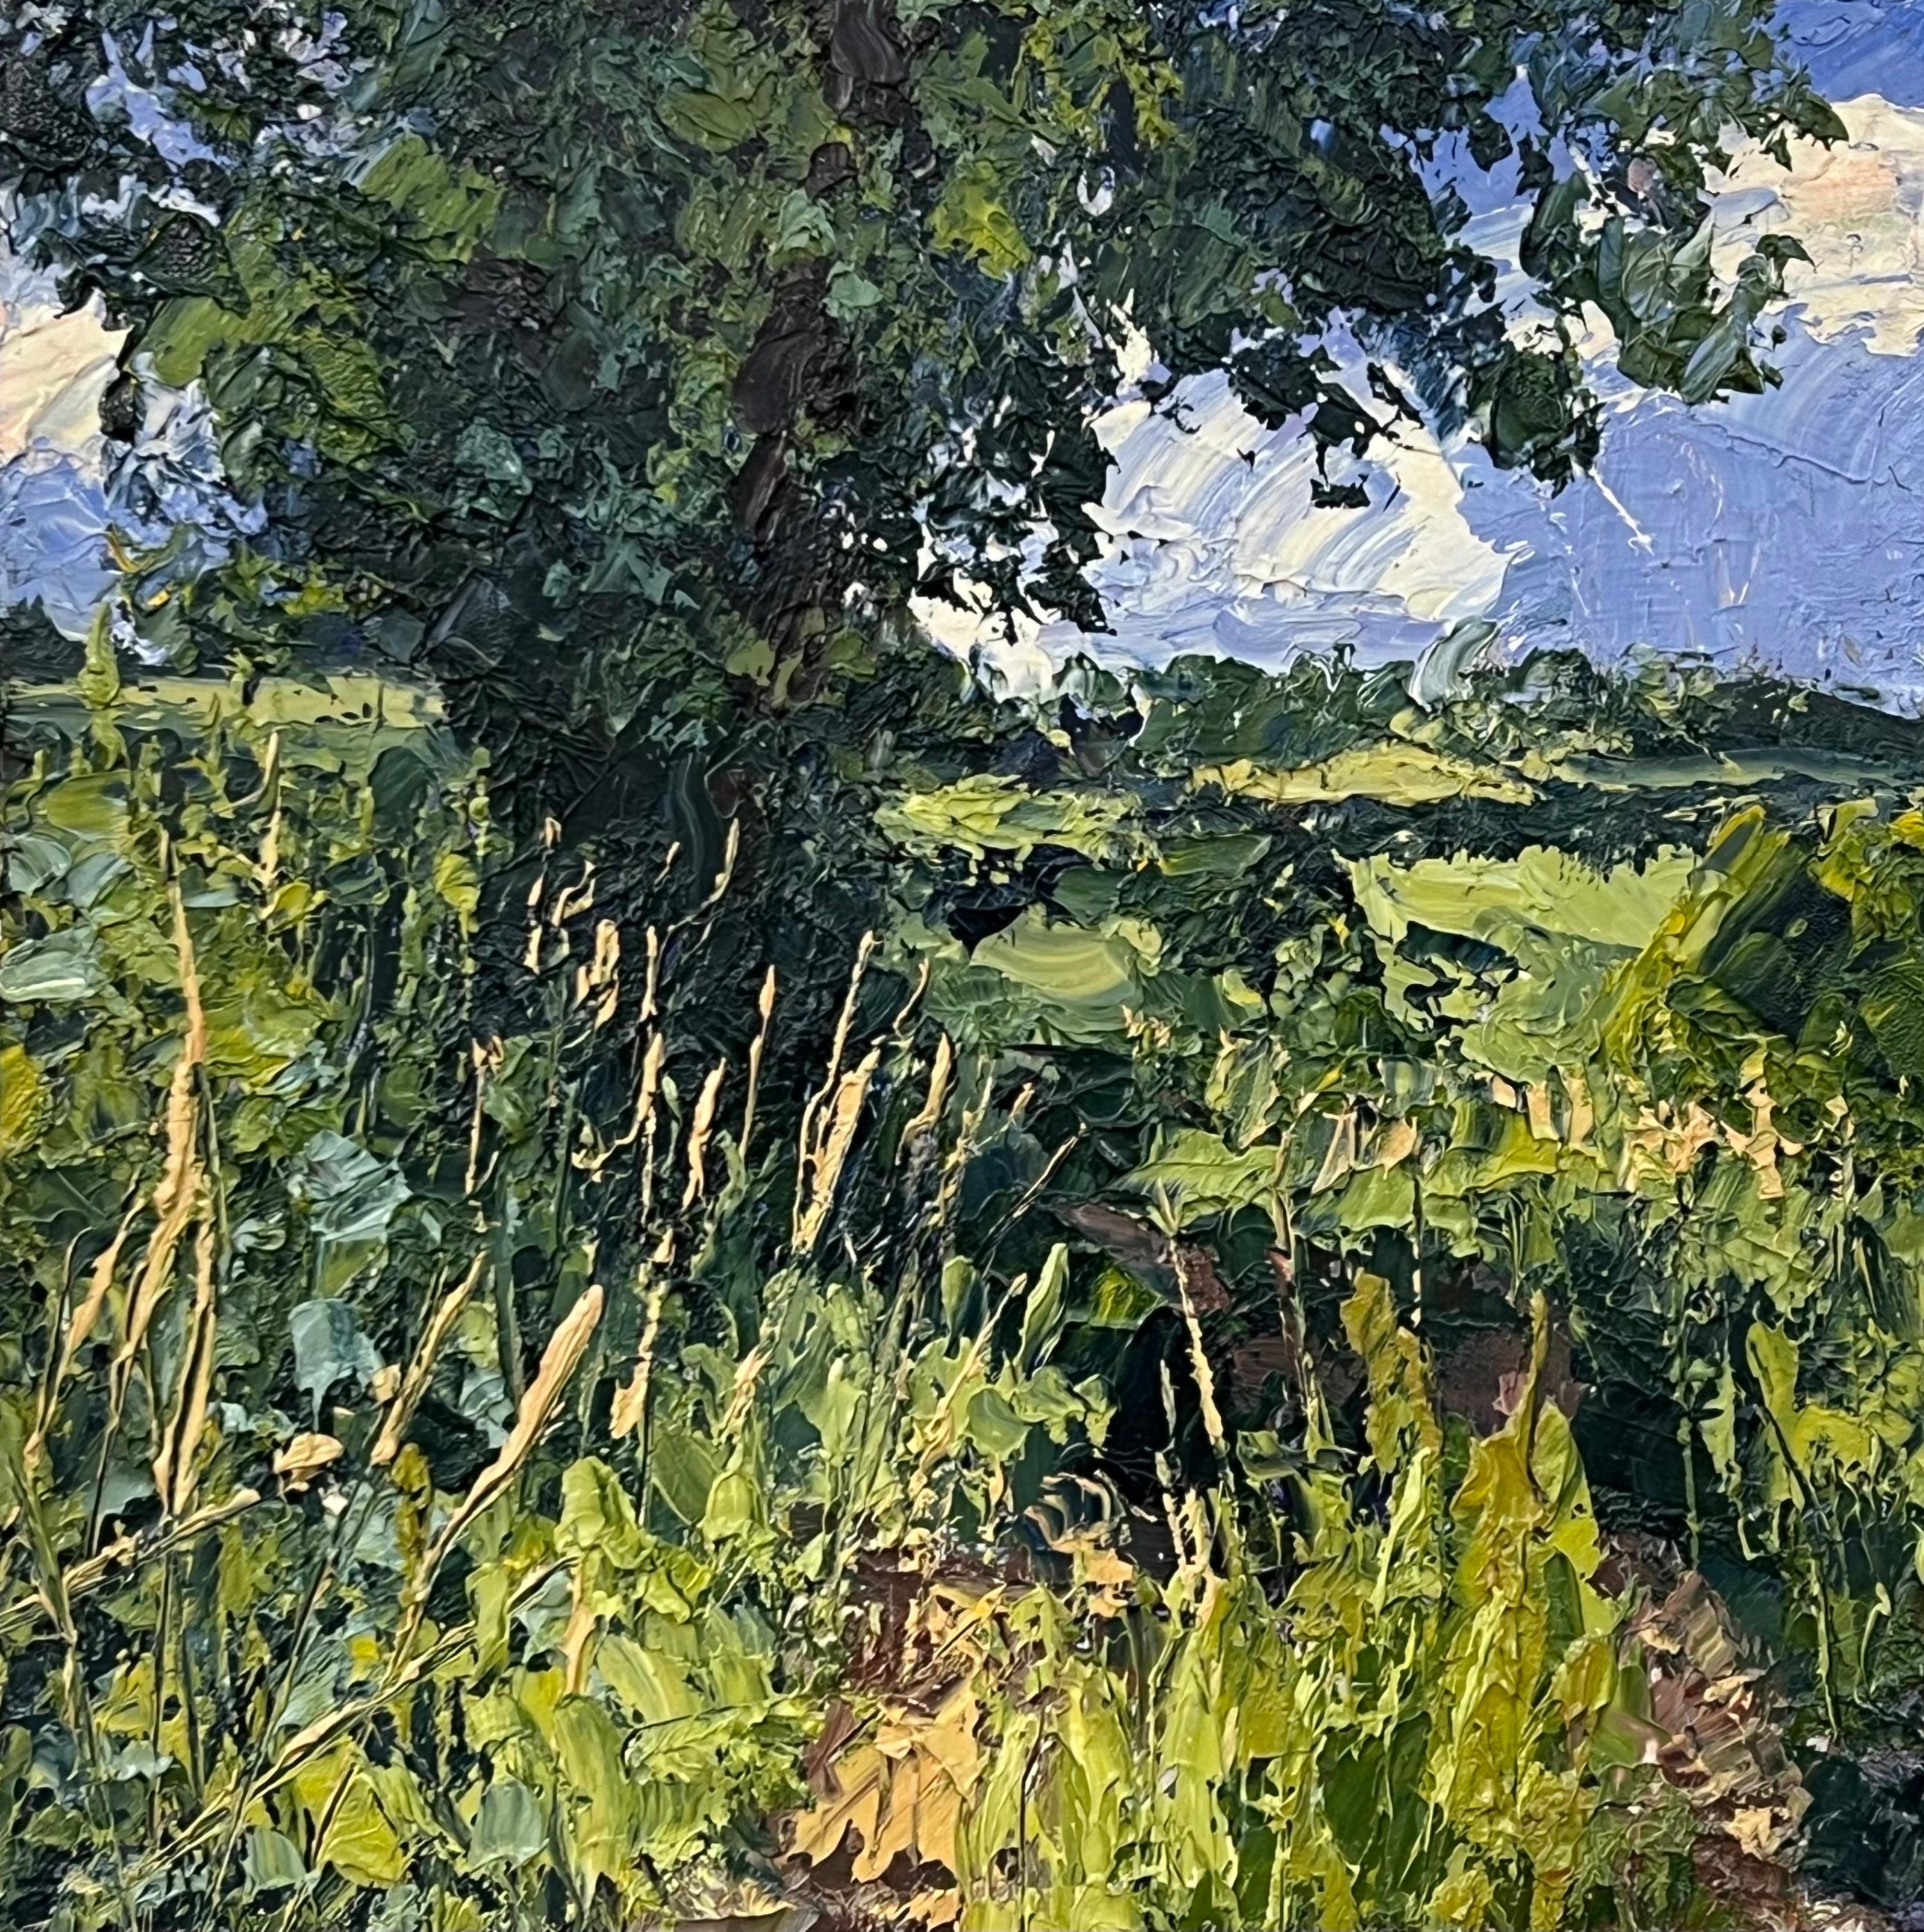 English Summer Impasto Landscape Oil Painting by British En Plein Air Artist